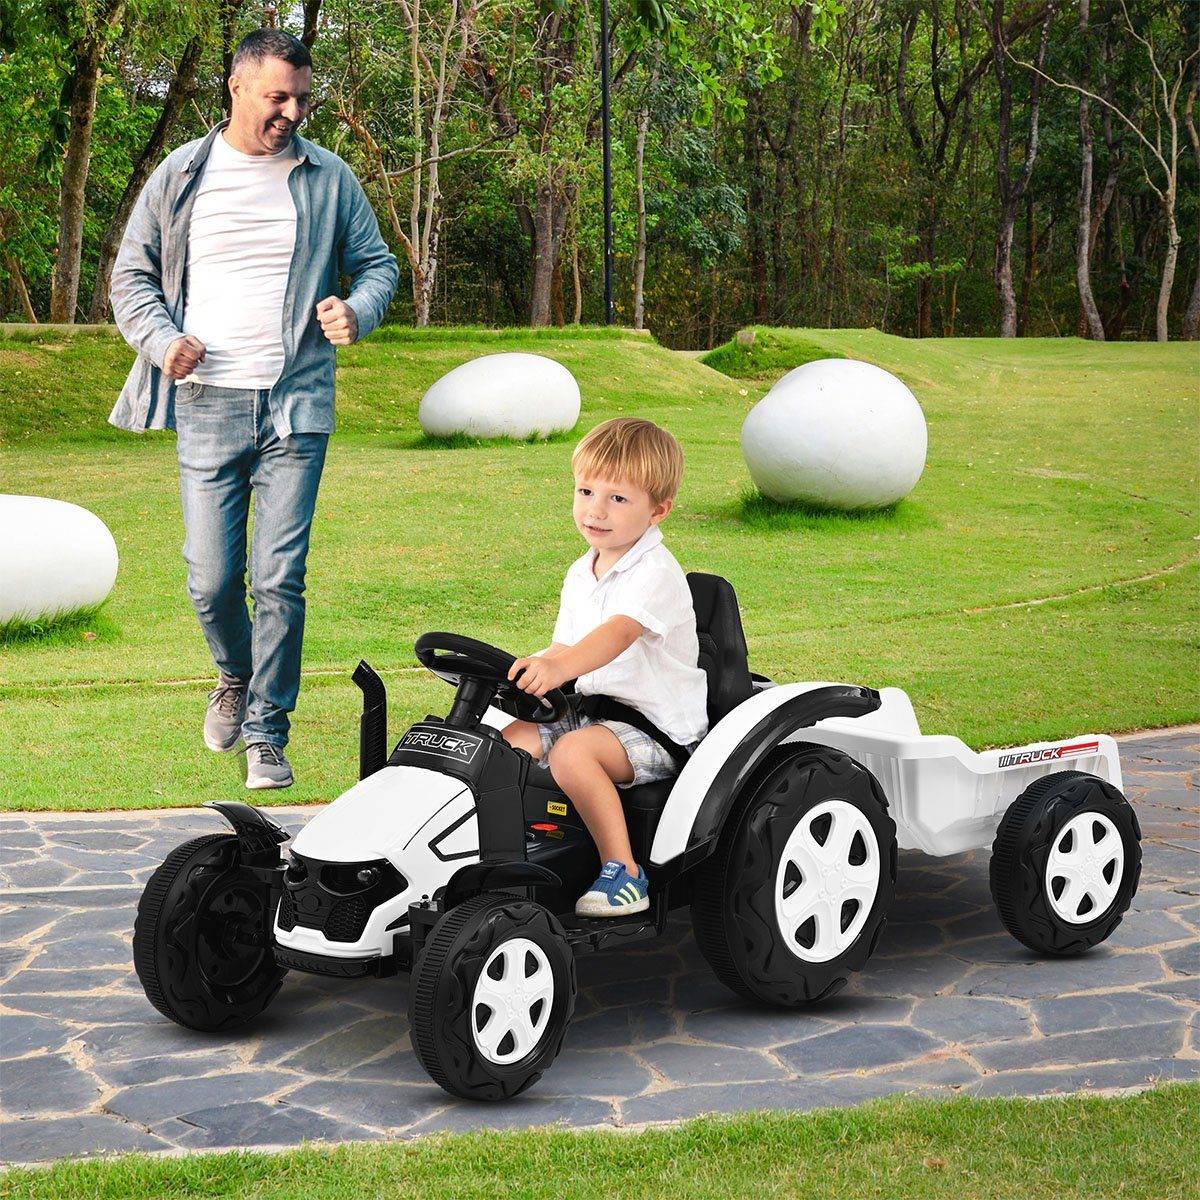 XDeer Spielzeug-Auto Spielzeugauto Für Kinder Im Traktorstil Schornstein Sechs Räder, Intelligent Simuliert Ein Echtes Fahrerlebnis Geräumiger Sitz